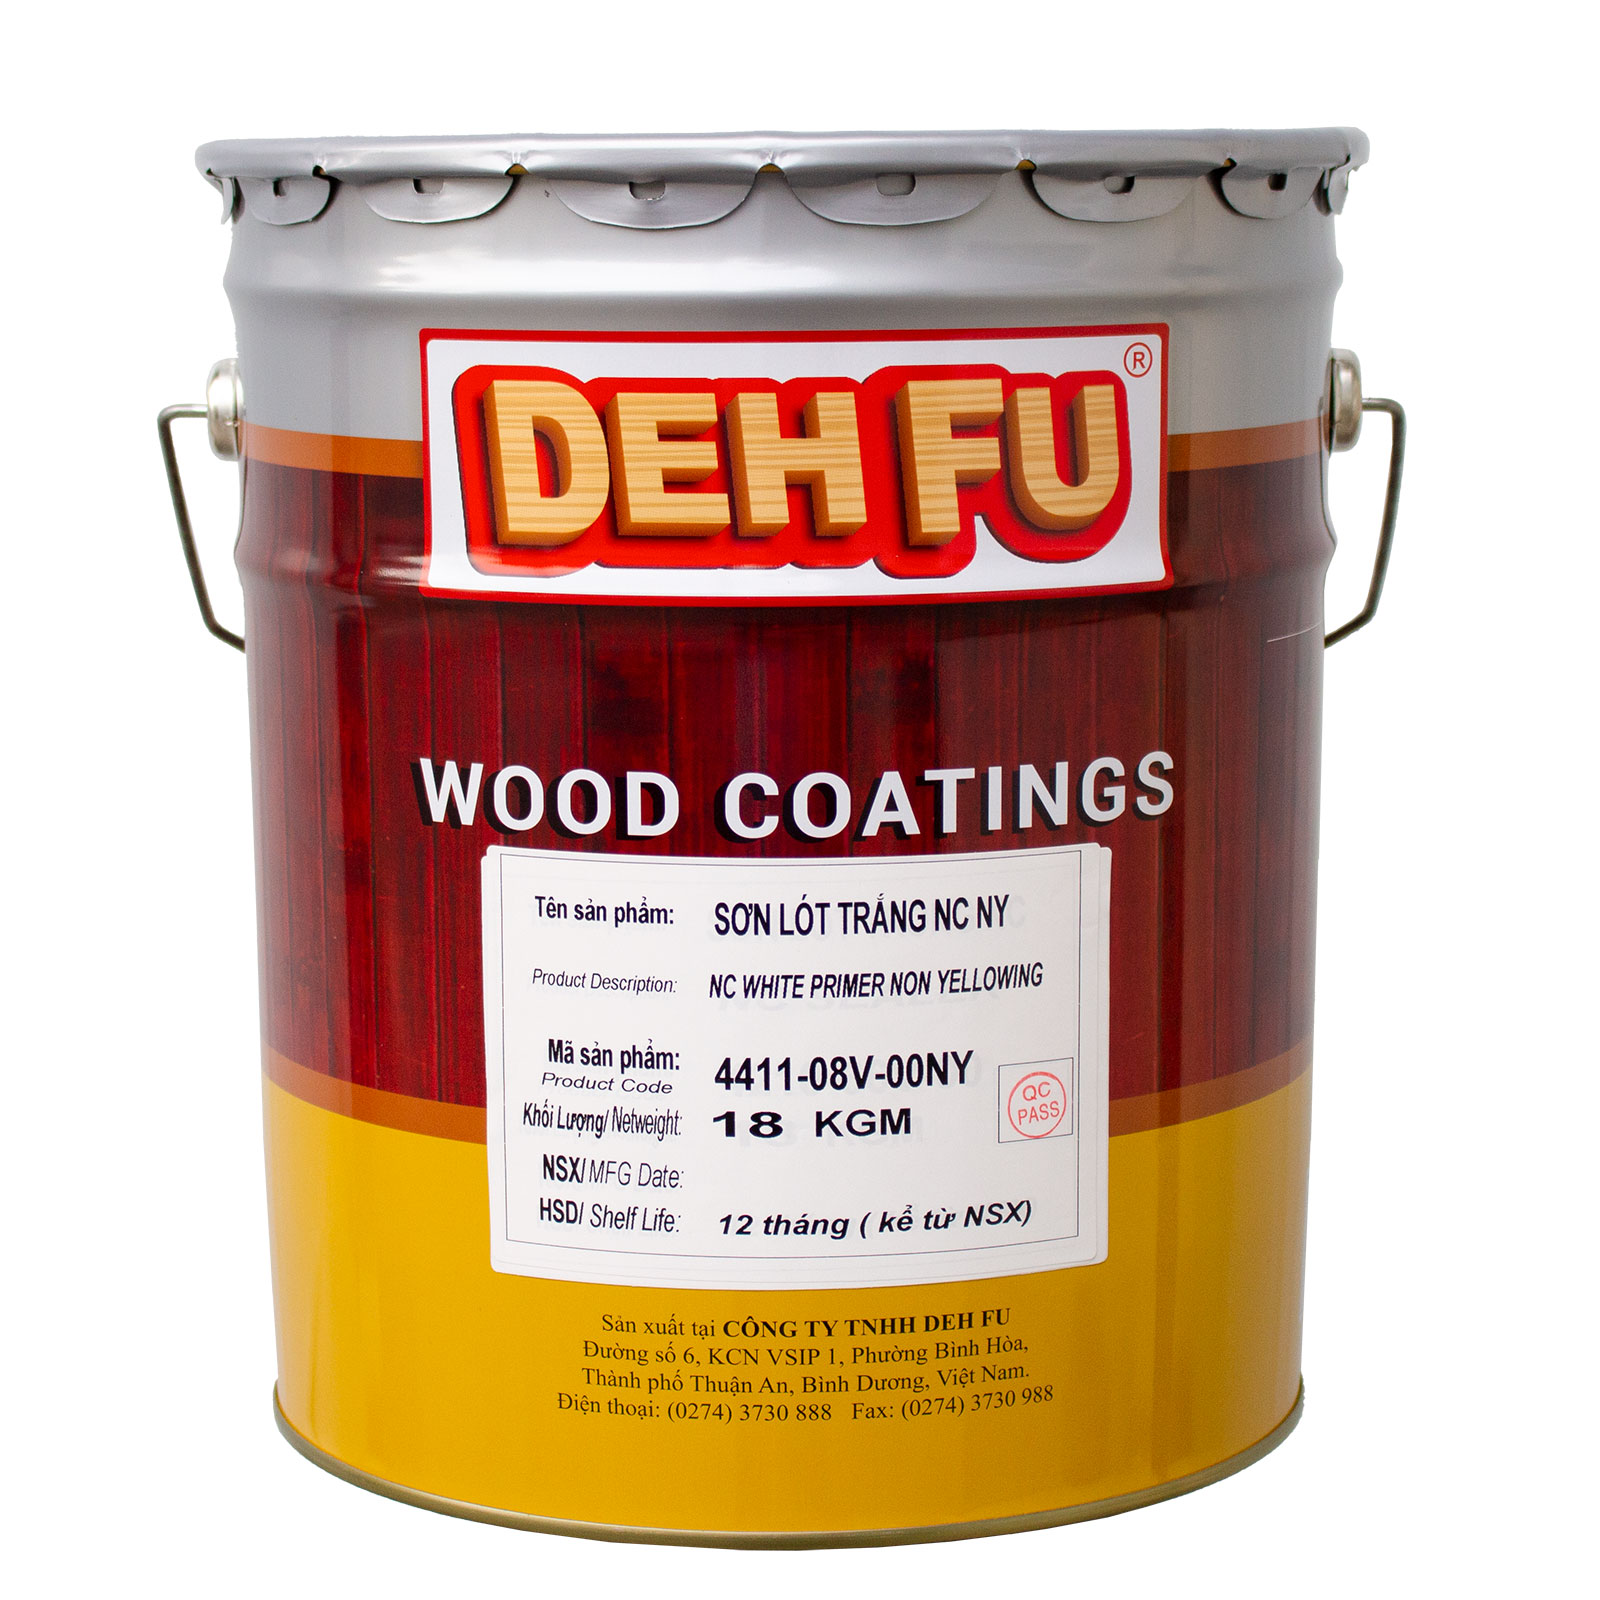 Wood coatings